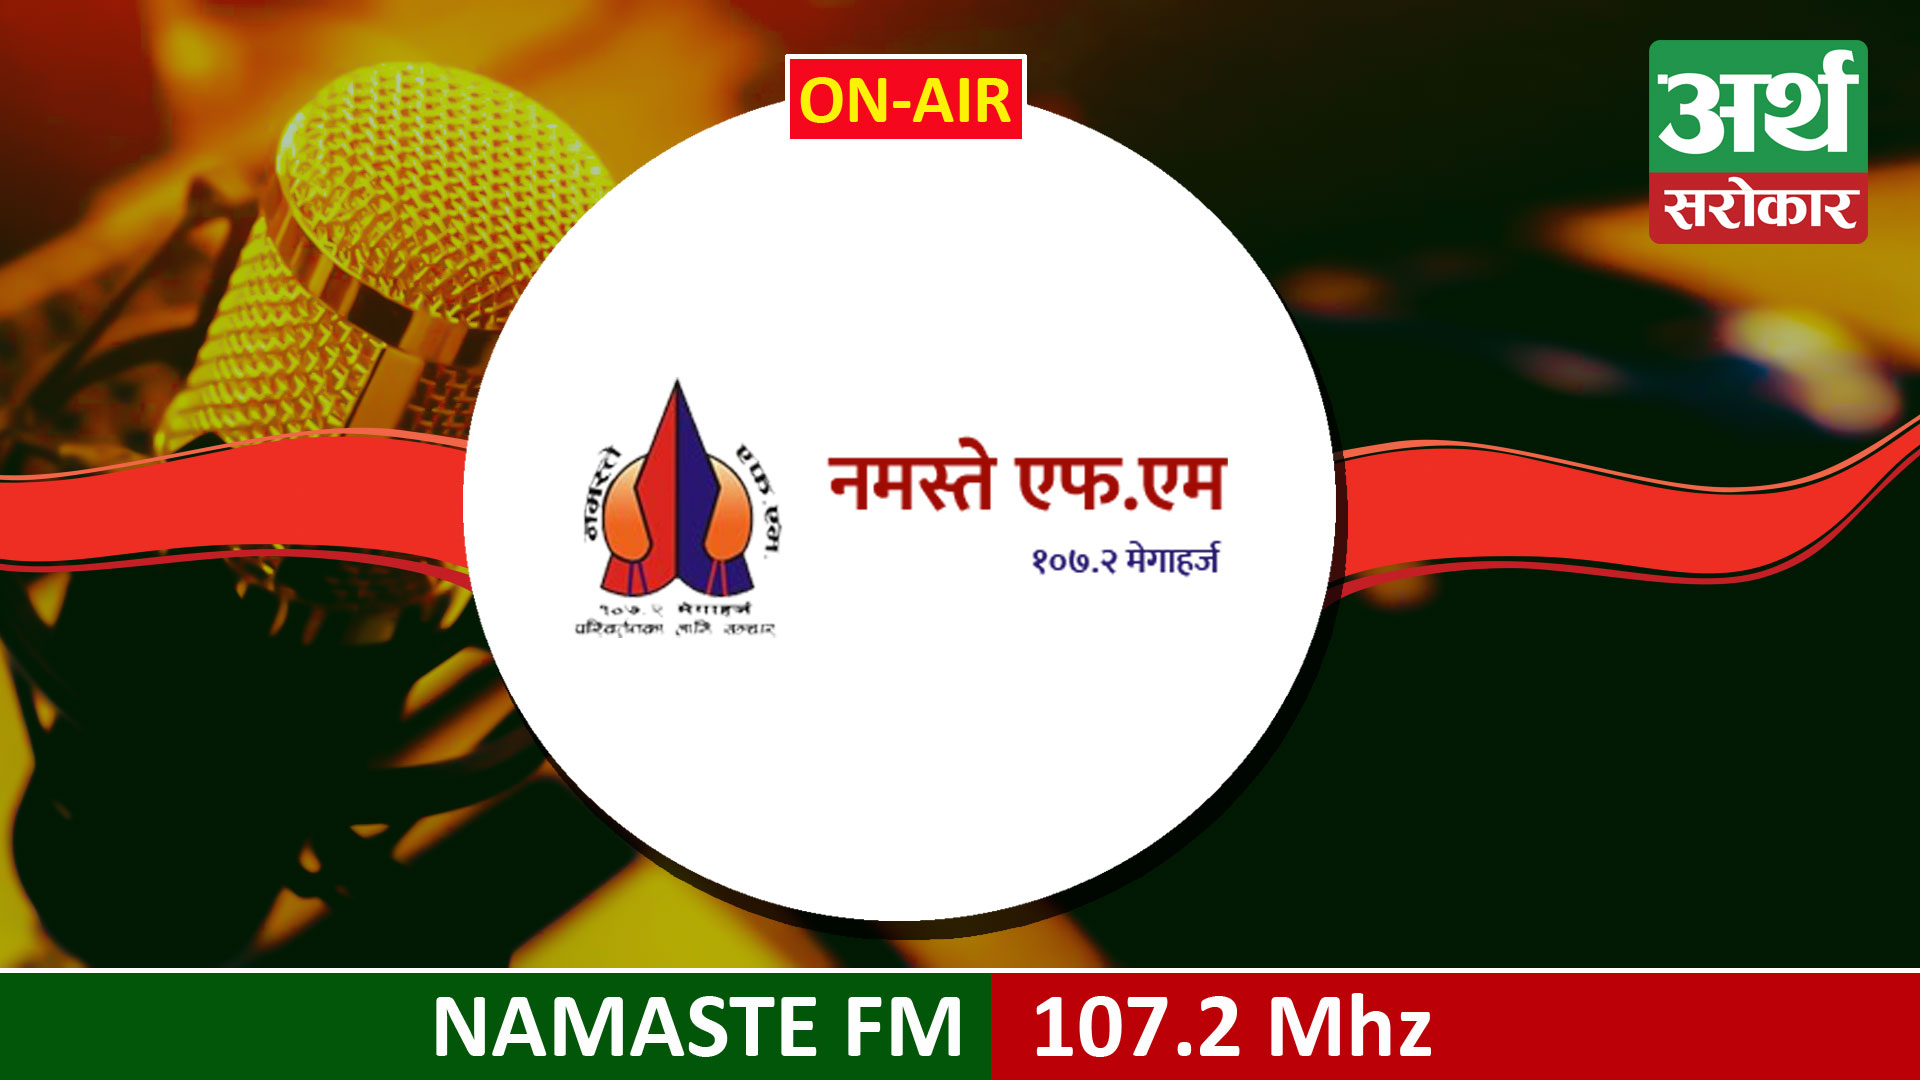 Namaste FM 107.2 MHz